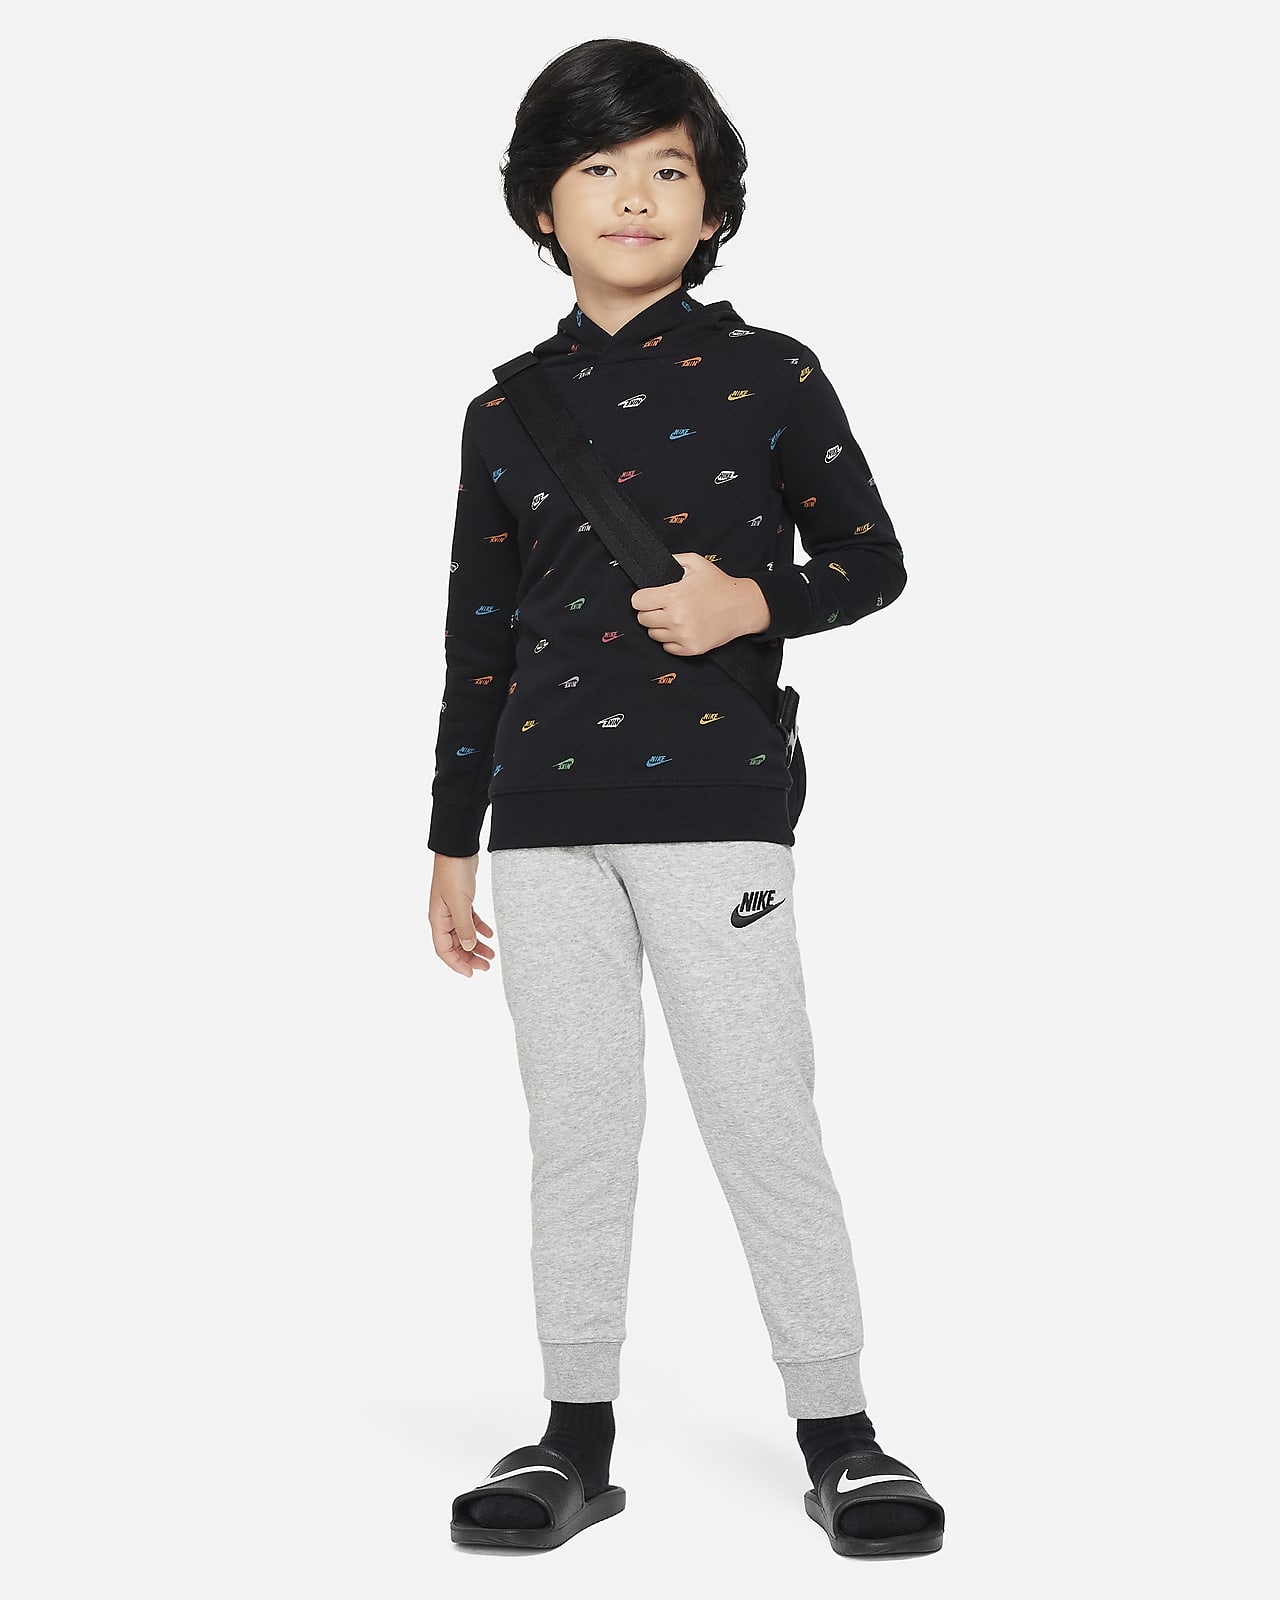 Nike Little Kids' Monogram Hoodie and Pants Set